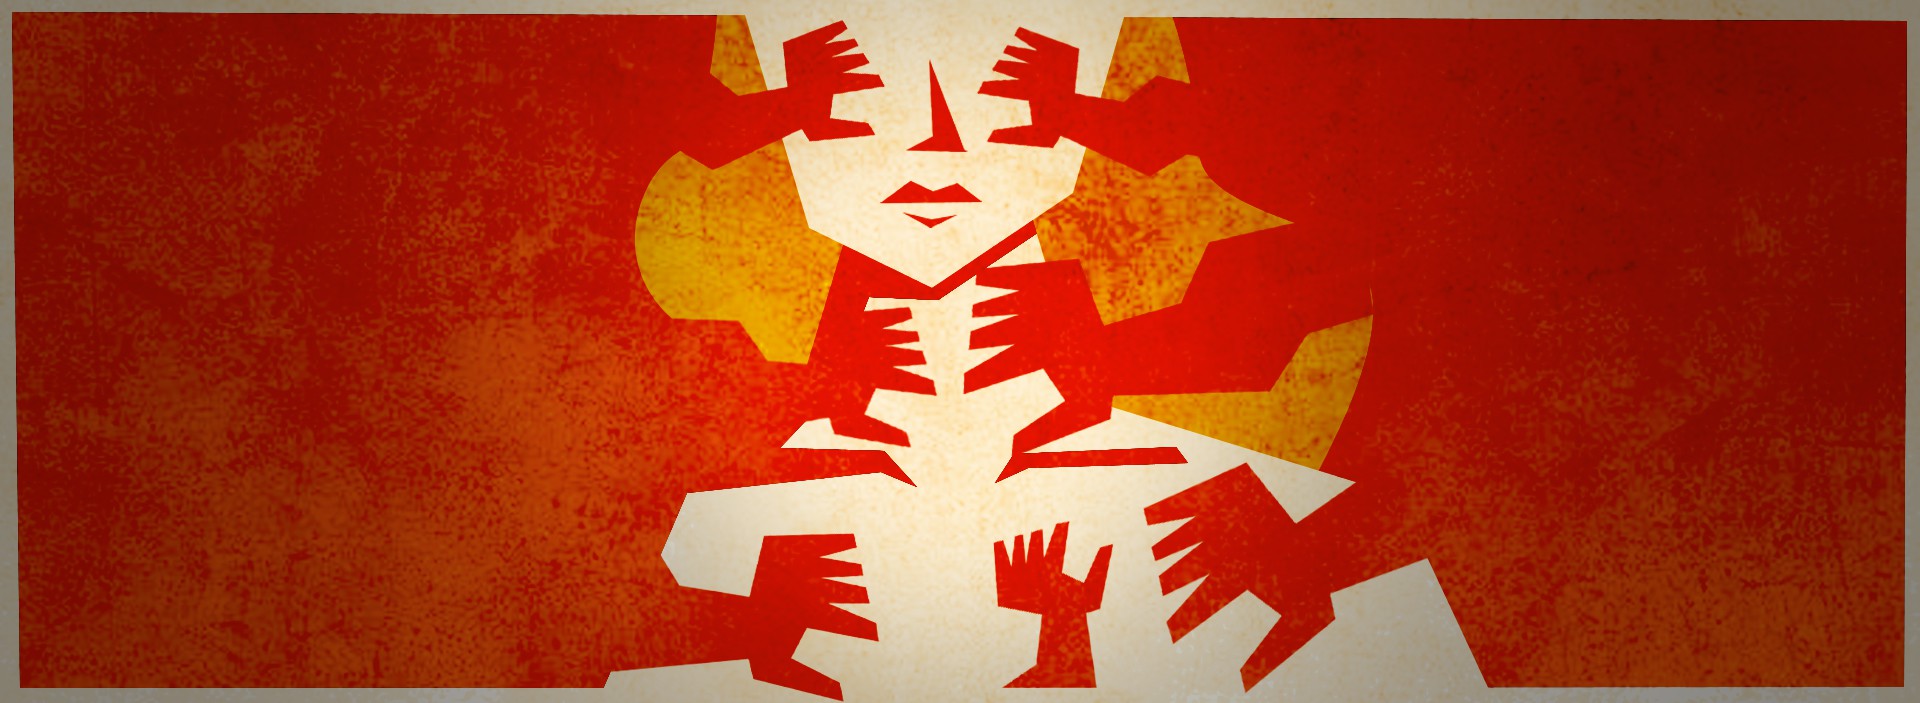 capa violencia contra a mulher (Foto: ilustração Isac Bernardo)